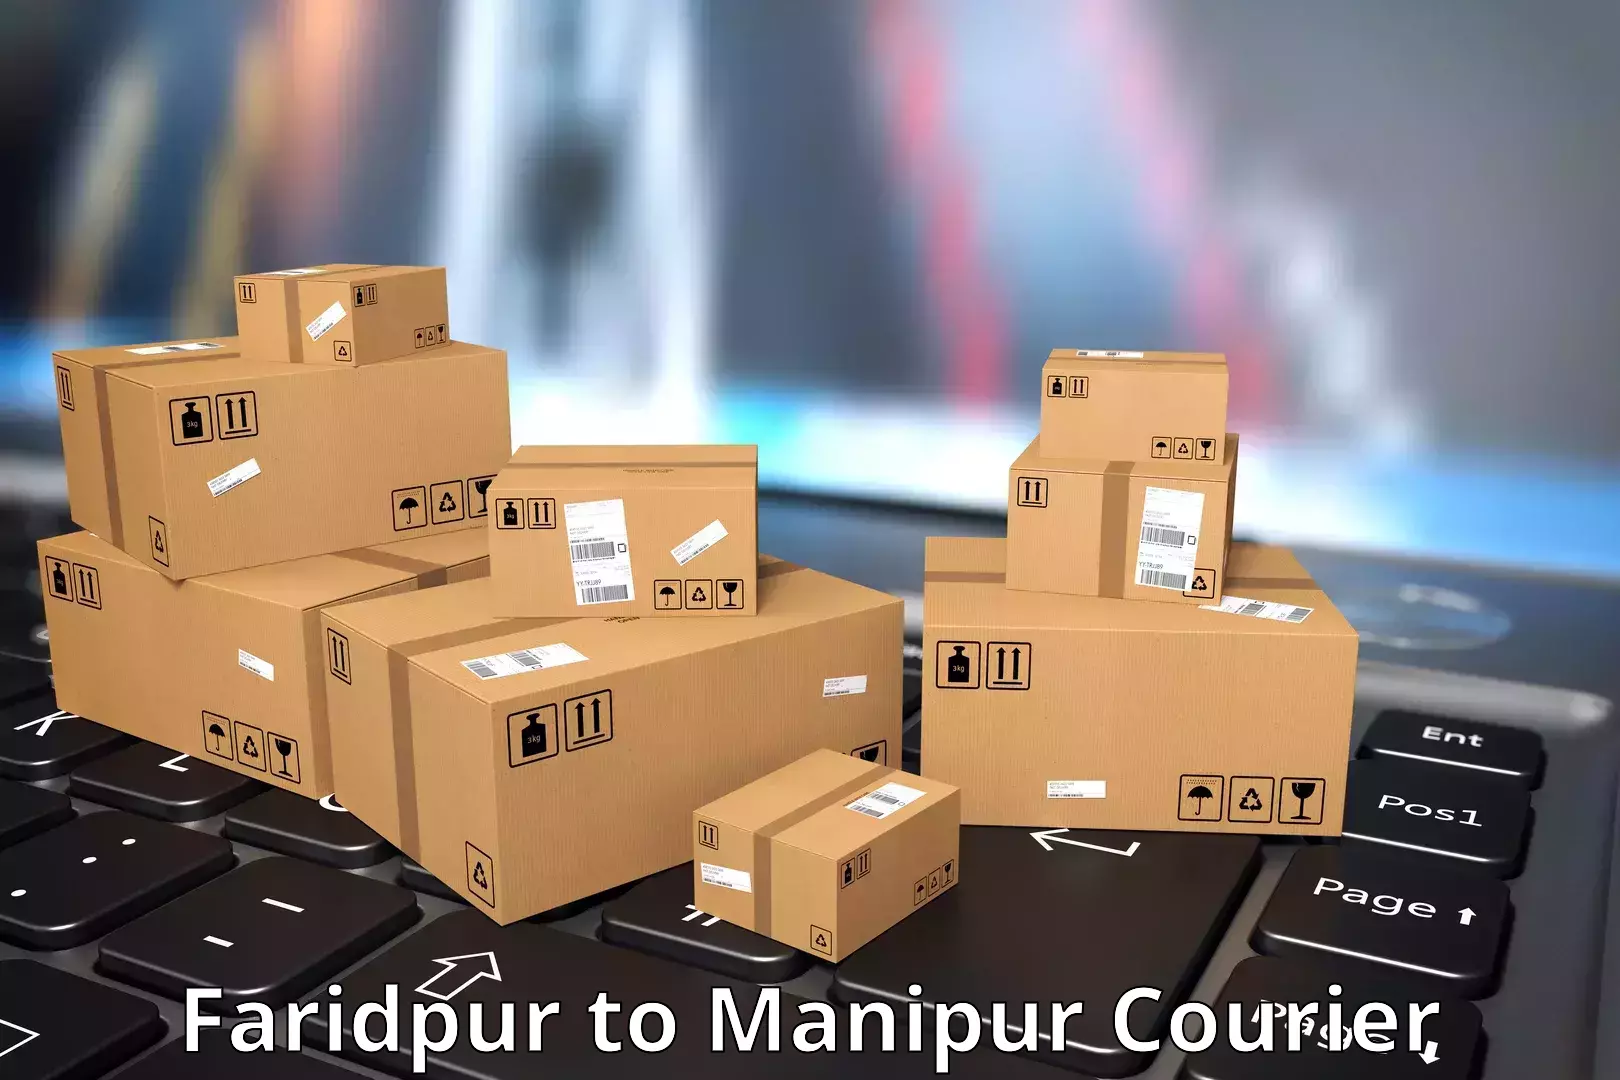 Courier service comparison Faridpur to IIIT Senapati